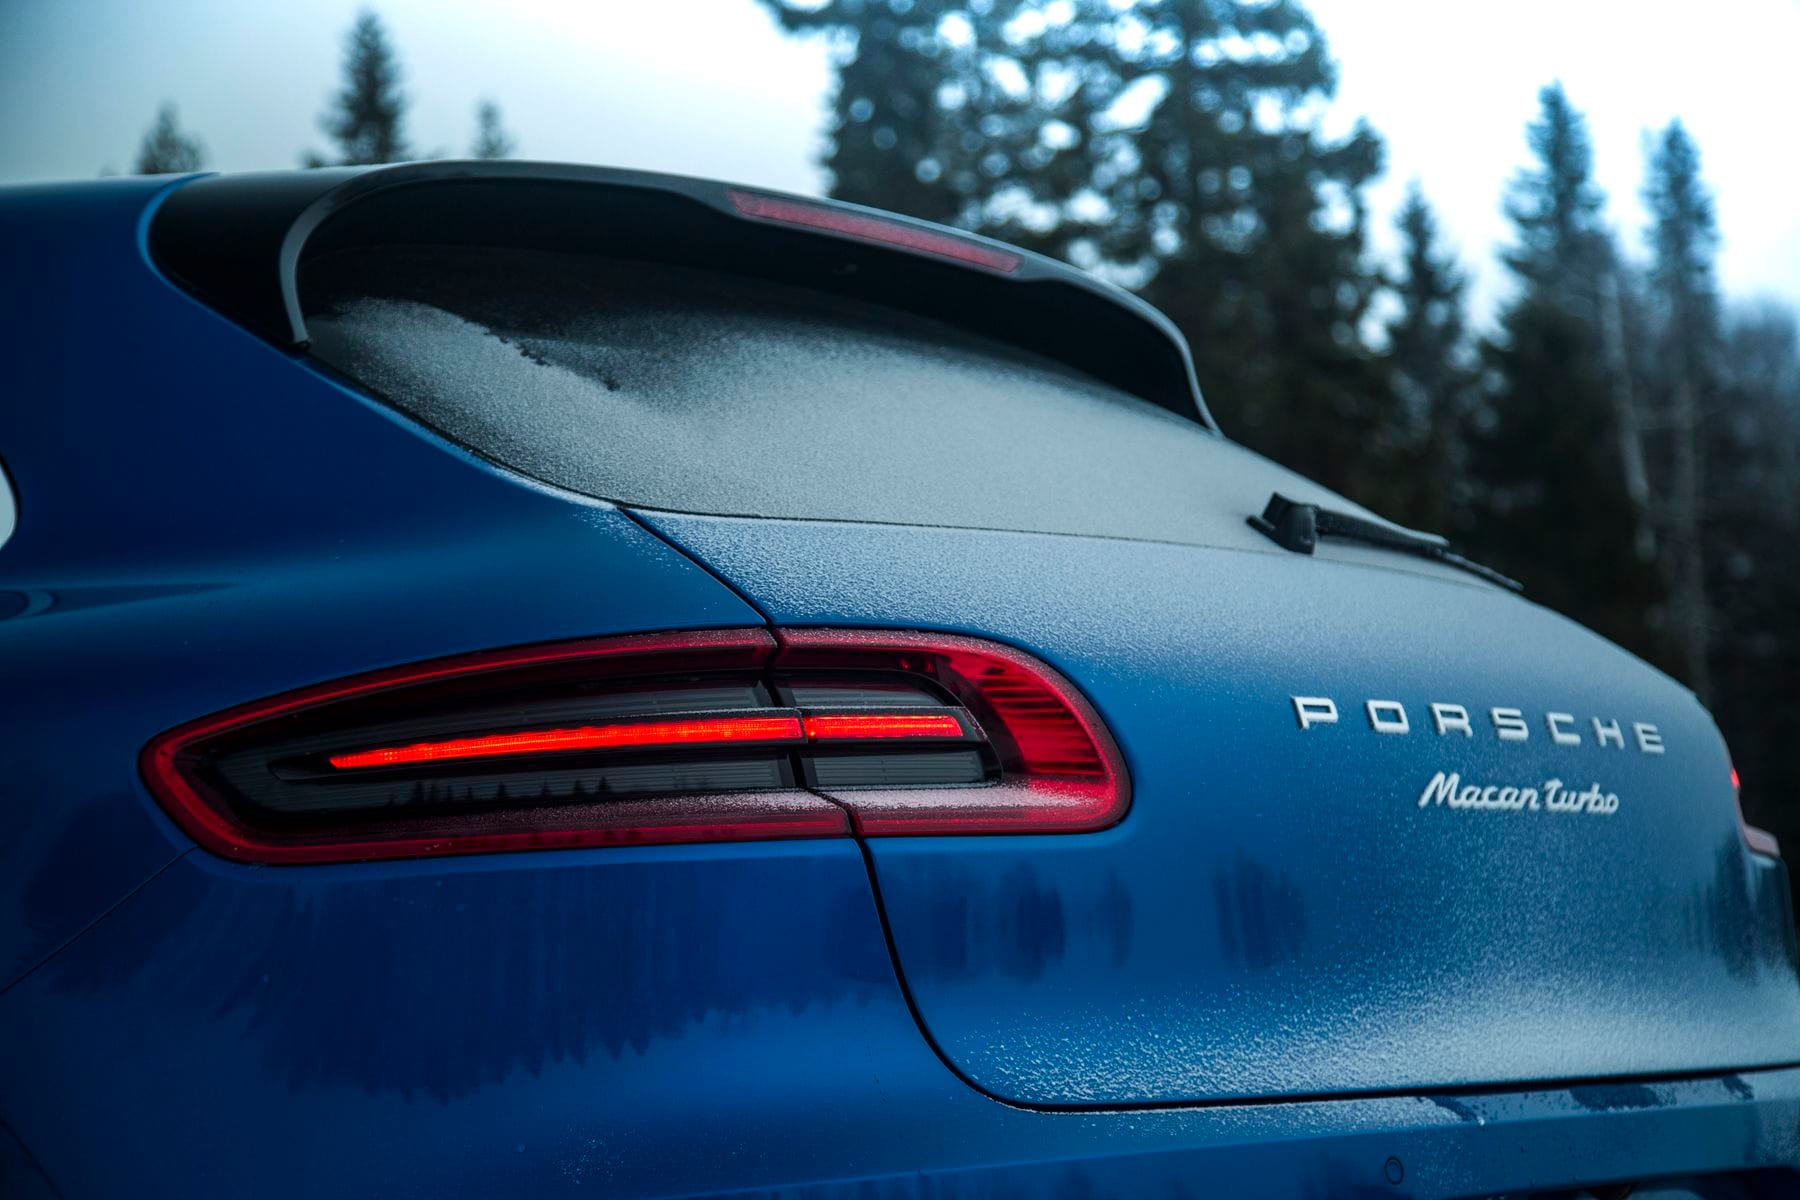 Für den Porsche Macan Turbo mit Performance-Paket verlangt Porsche einen Aufpreis von 7390 Euro. Der Bolide ist mit 91.143 Euro der teuerste und stärkste Macan.